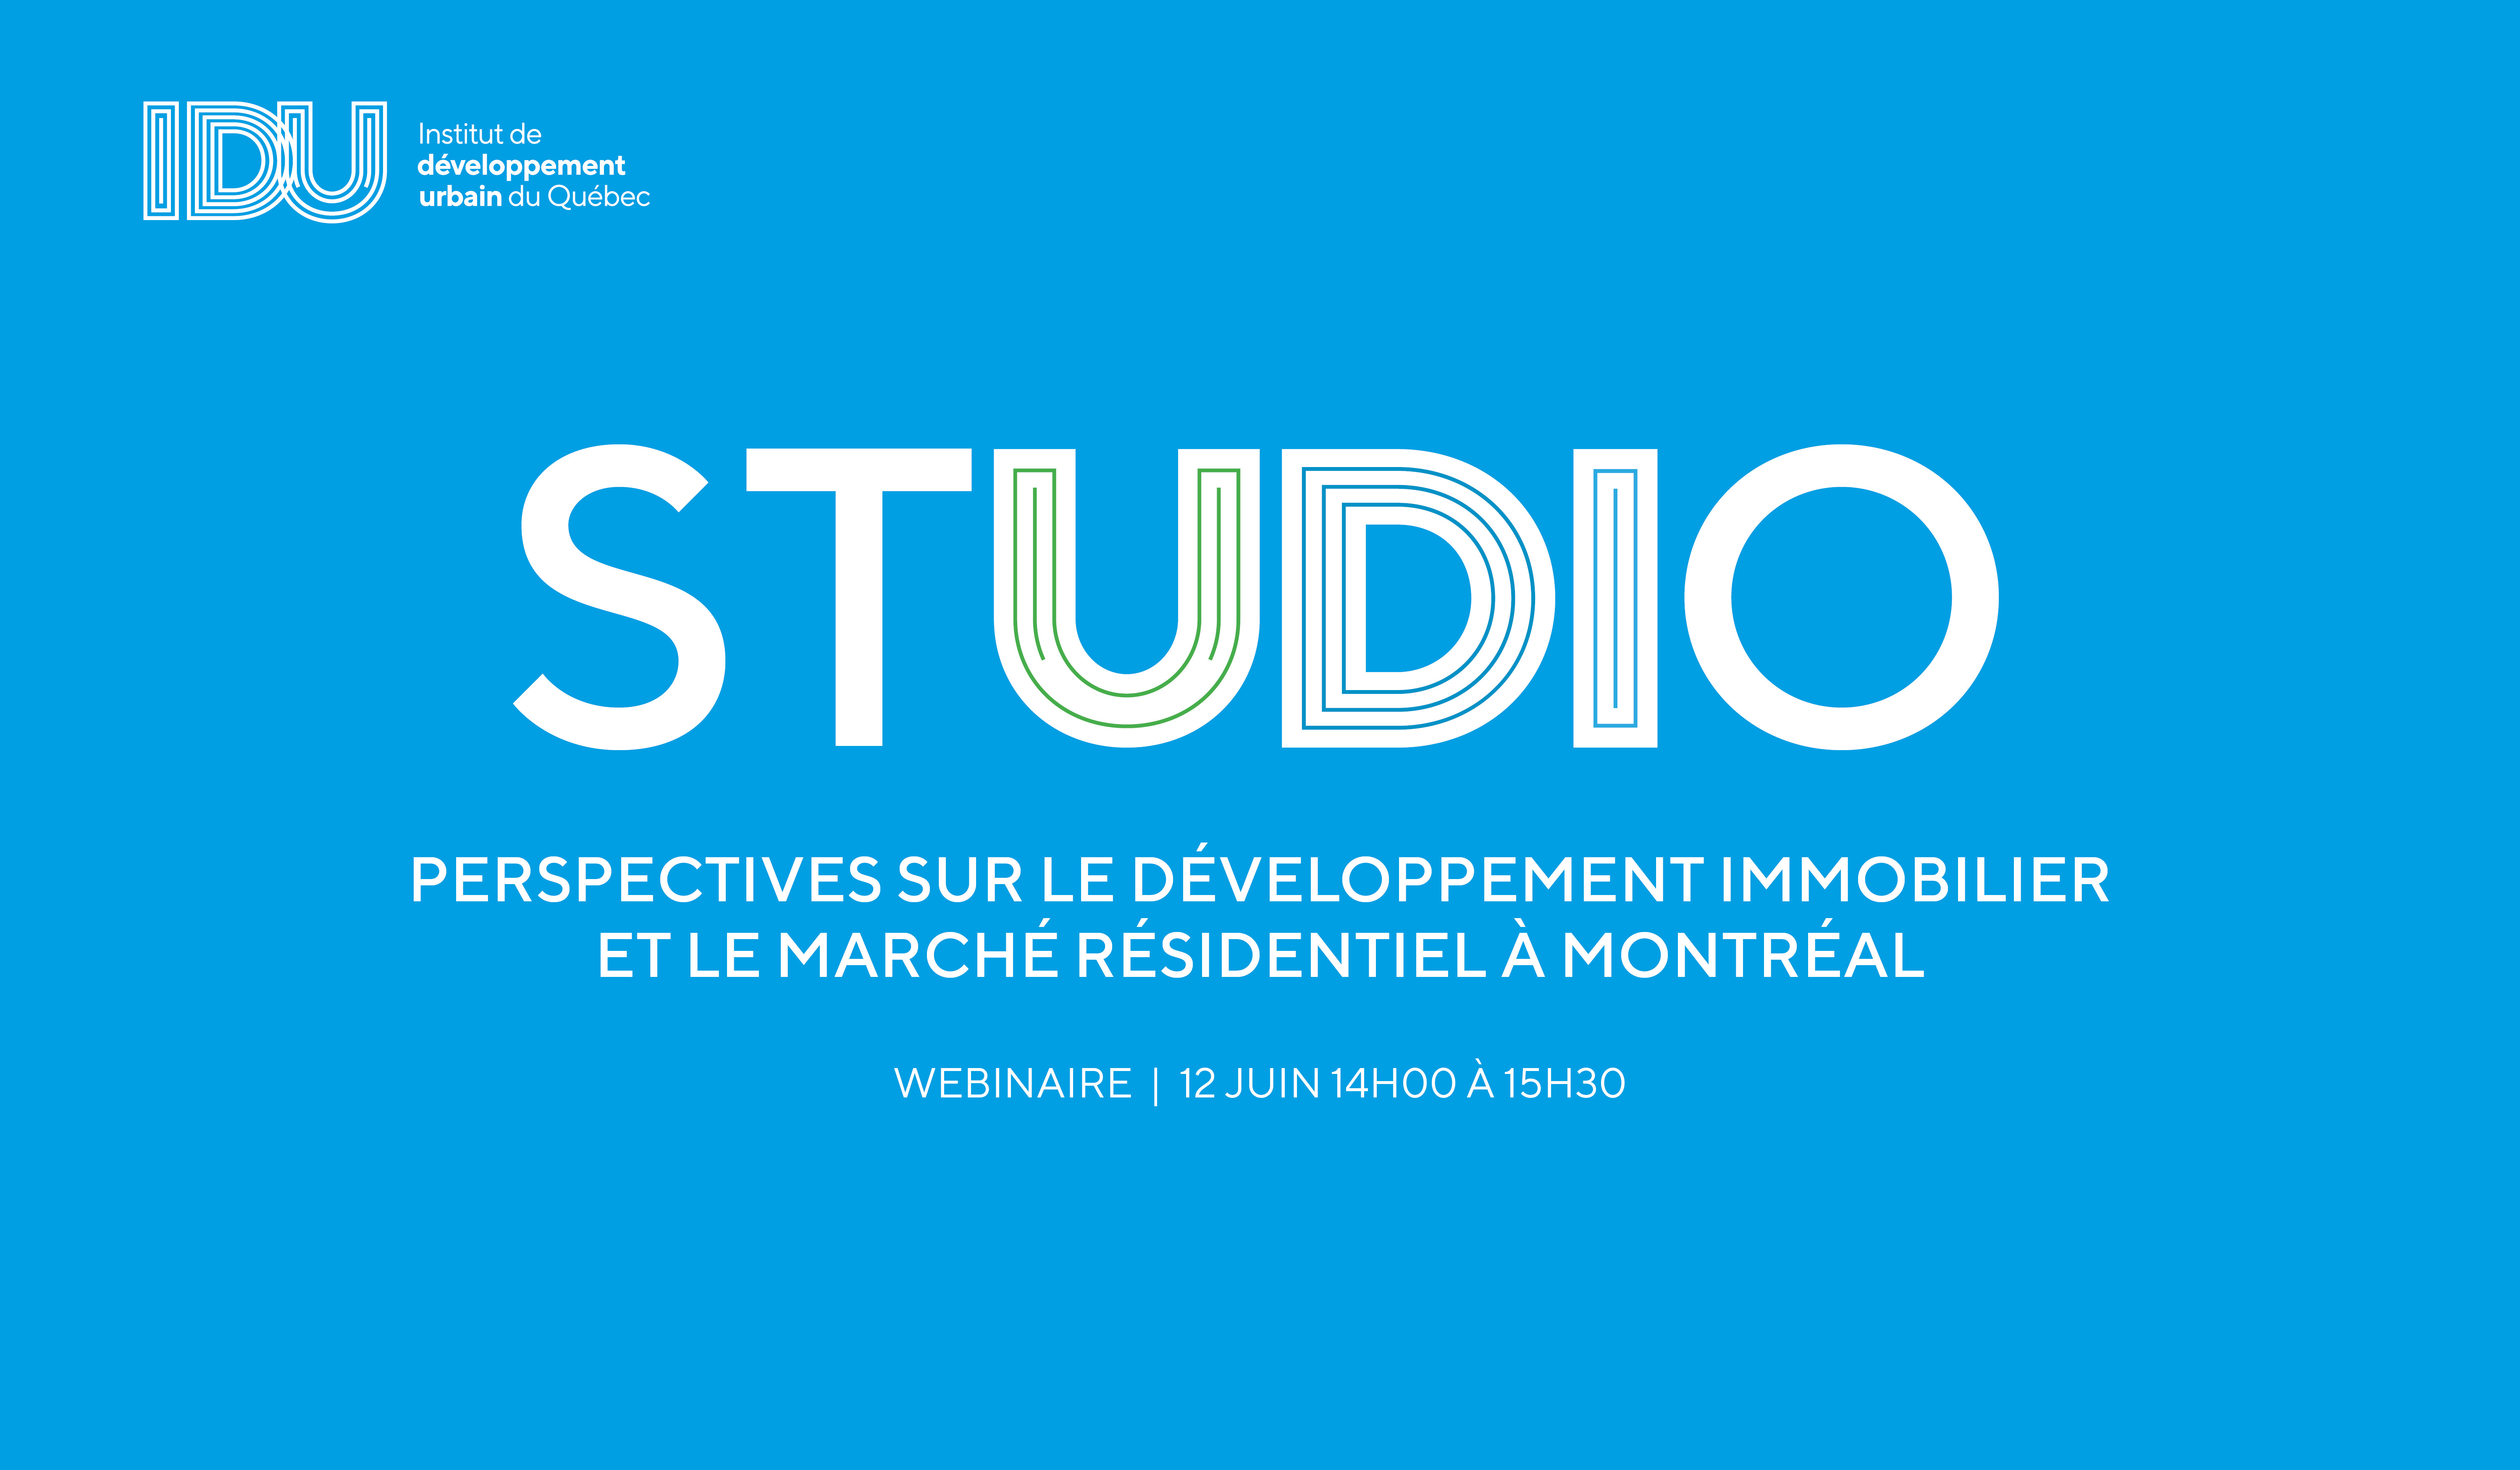 STUDIO IDU - Perspectives sur le développement immobilier et le marché résidentiel à Montréal